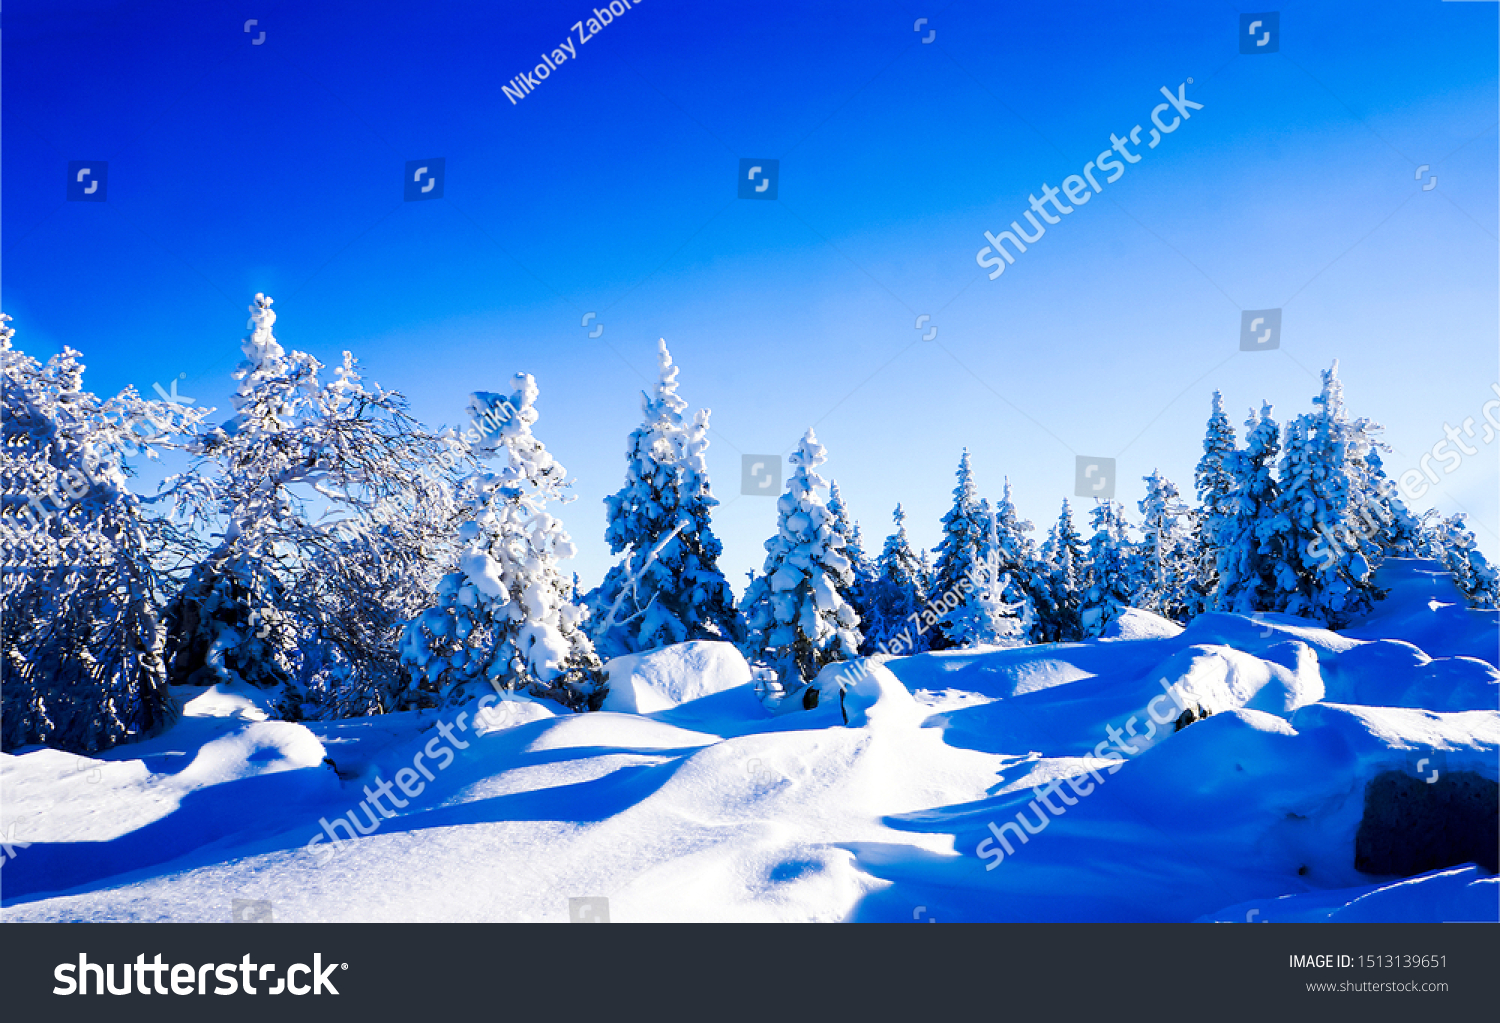 Winter pine forrest snowy landscape #1513139651